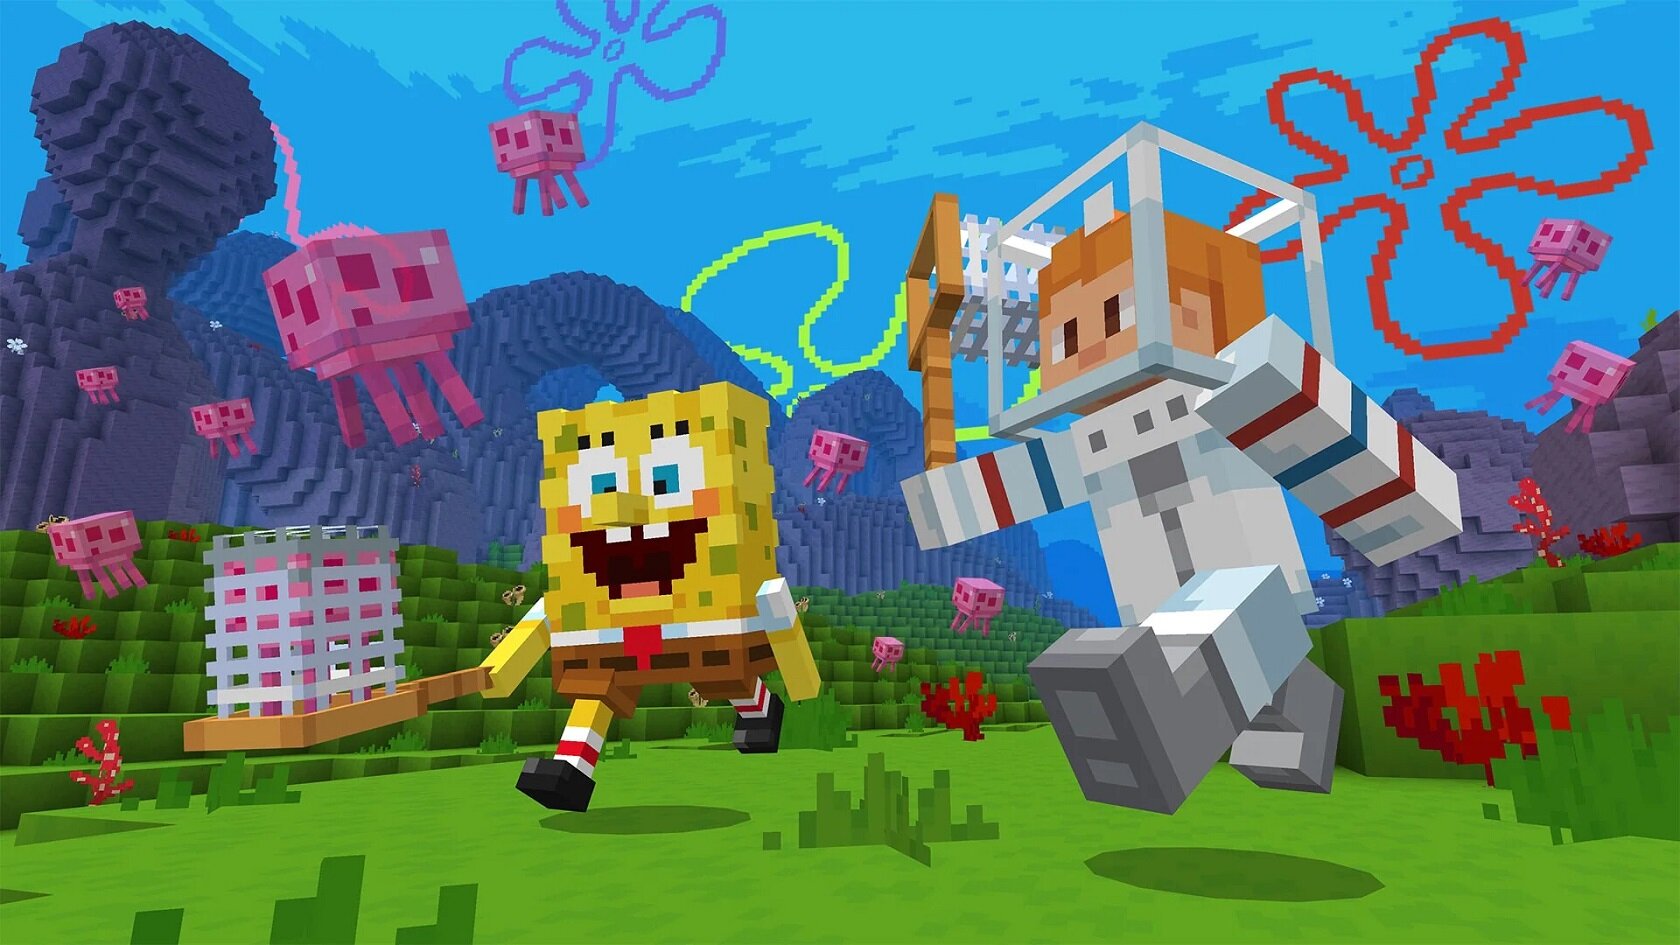 В Minecraft вышло DLC по Губке Бобу: с квестами, коллекционными предметами и странным Патриком